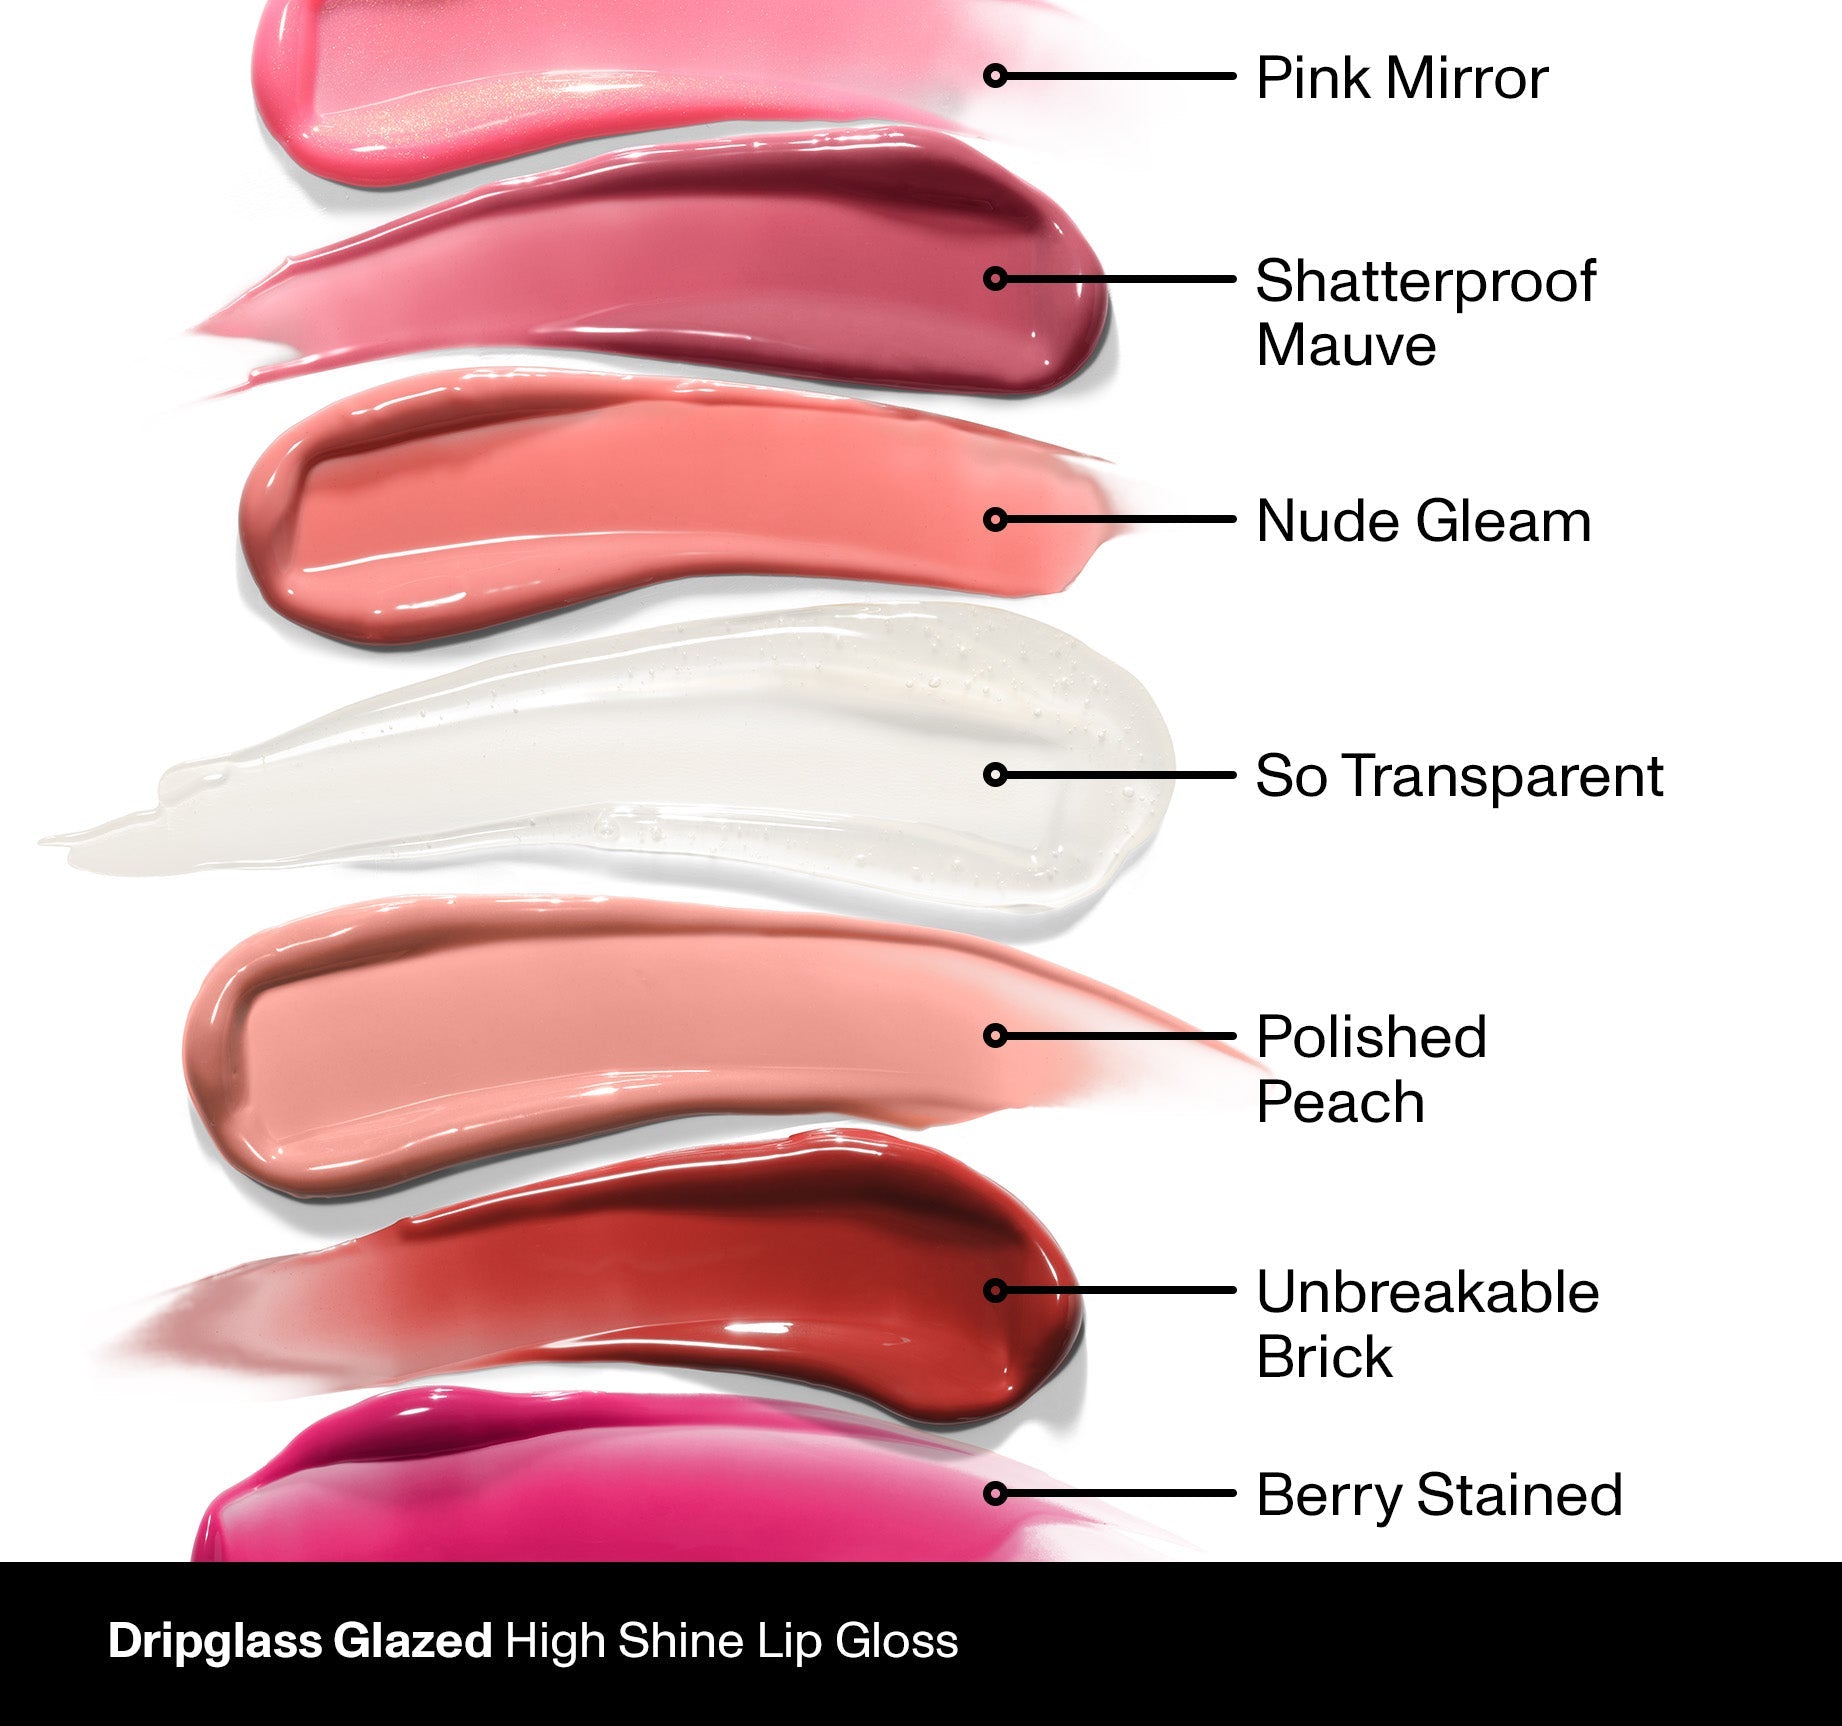 Dripglass Glazed High Shine Lip Gloss - Polished Peach - Image 4